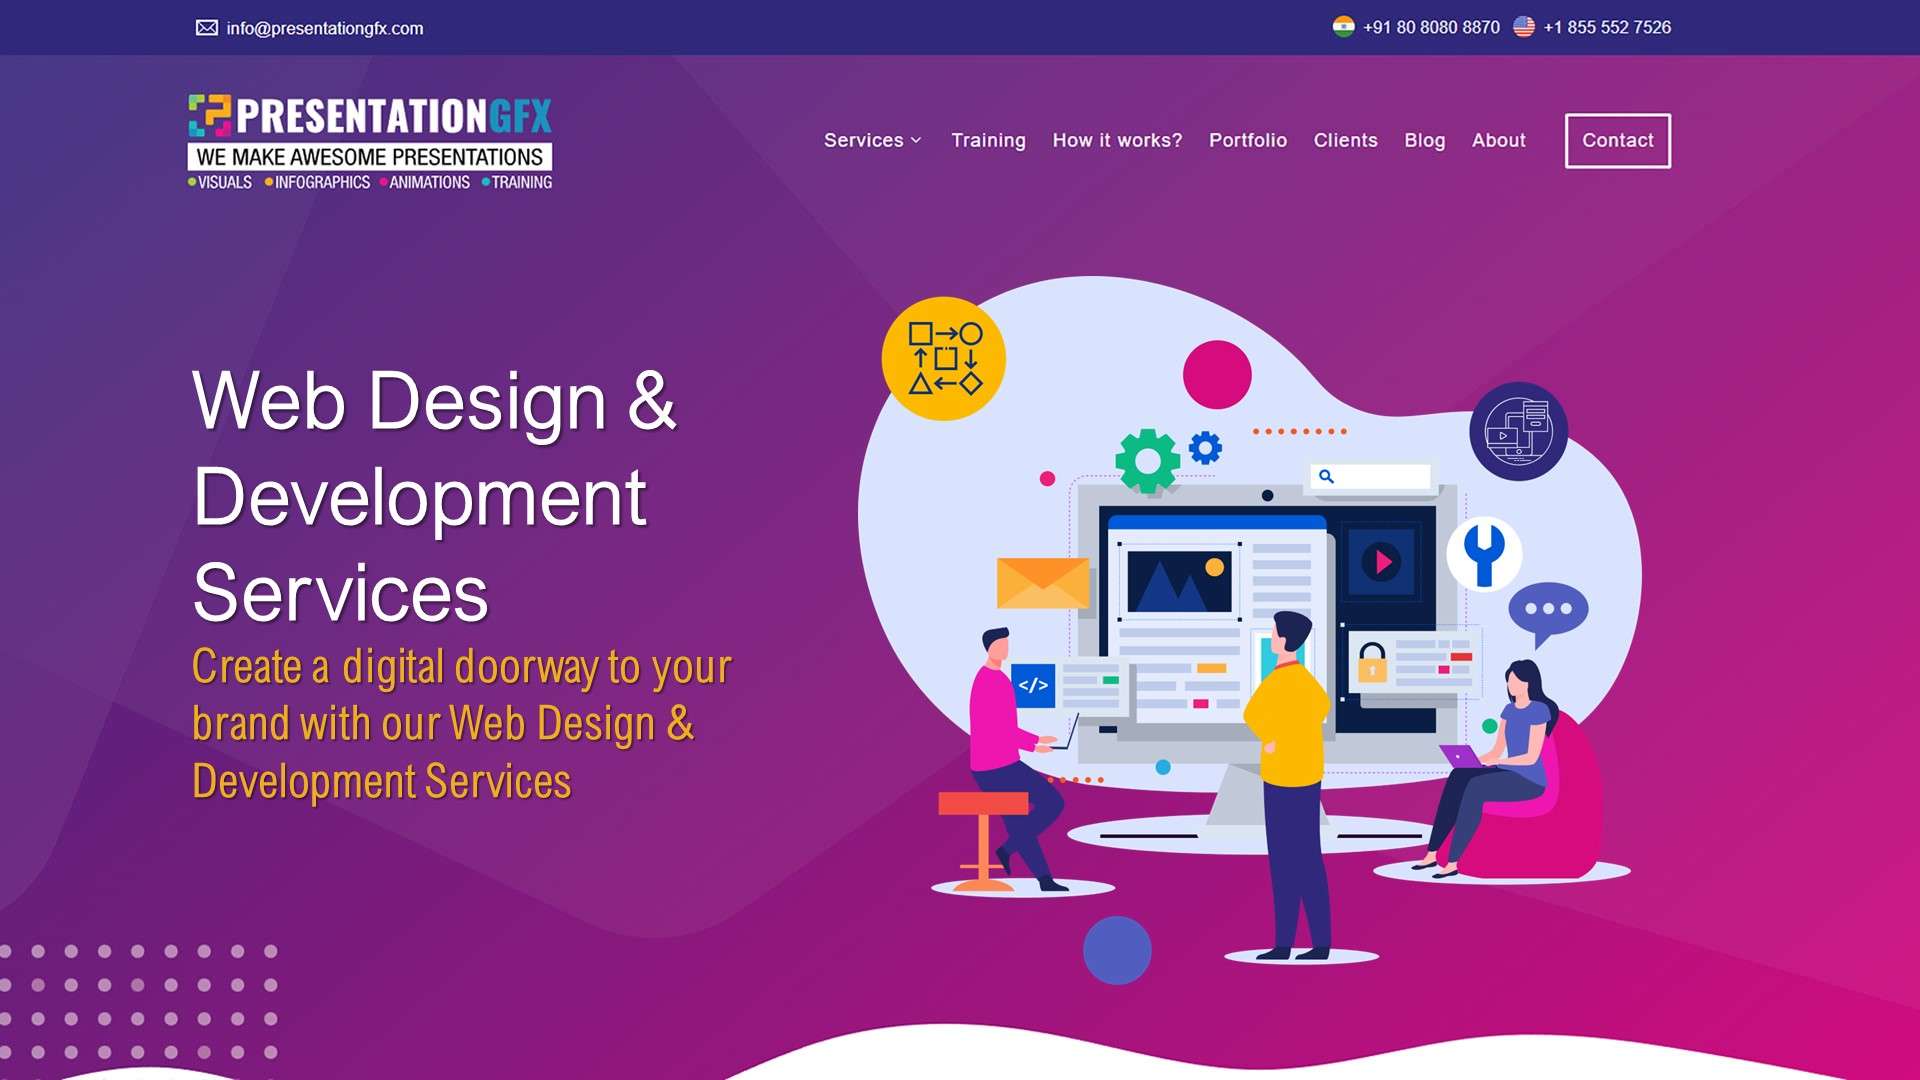 Web Design & Web Development Services | PresentationGFX